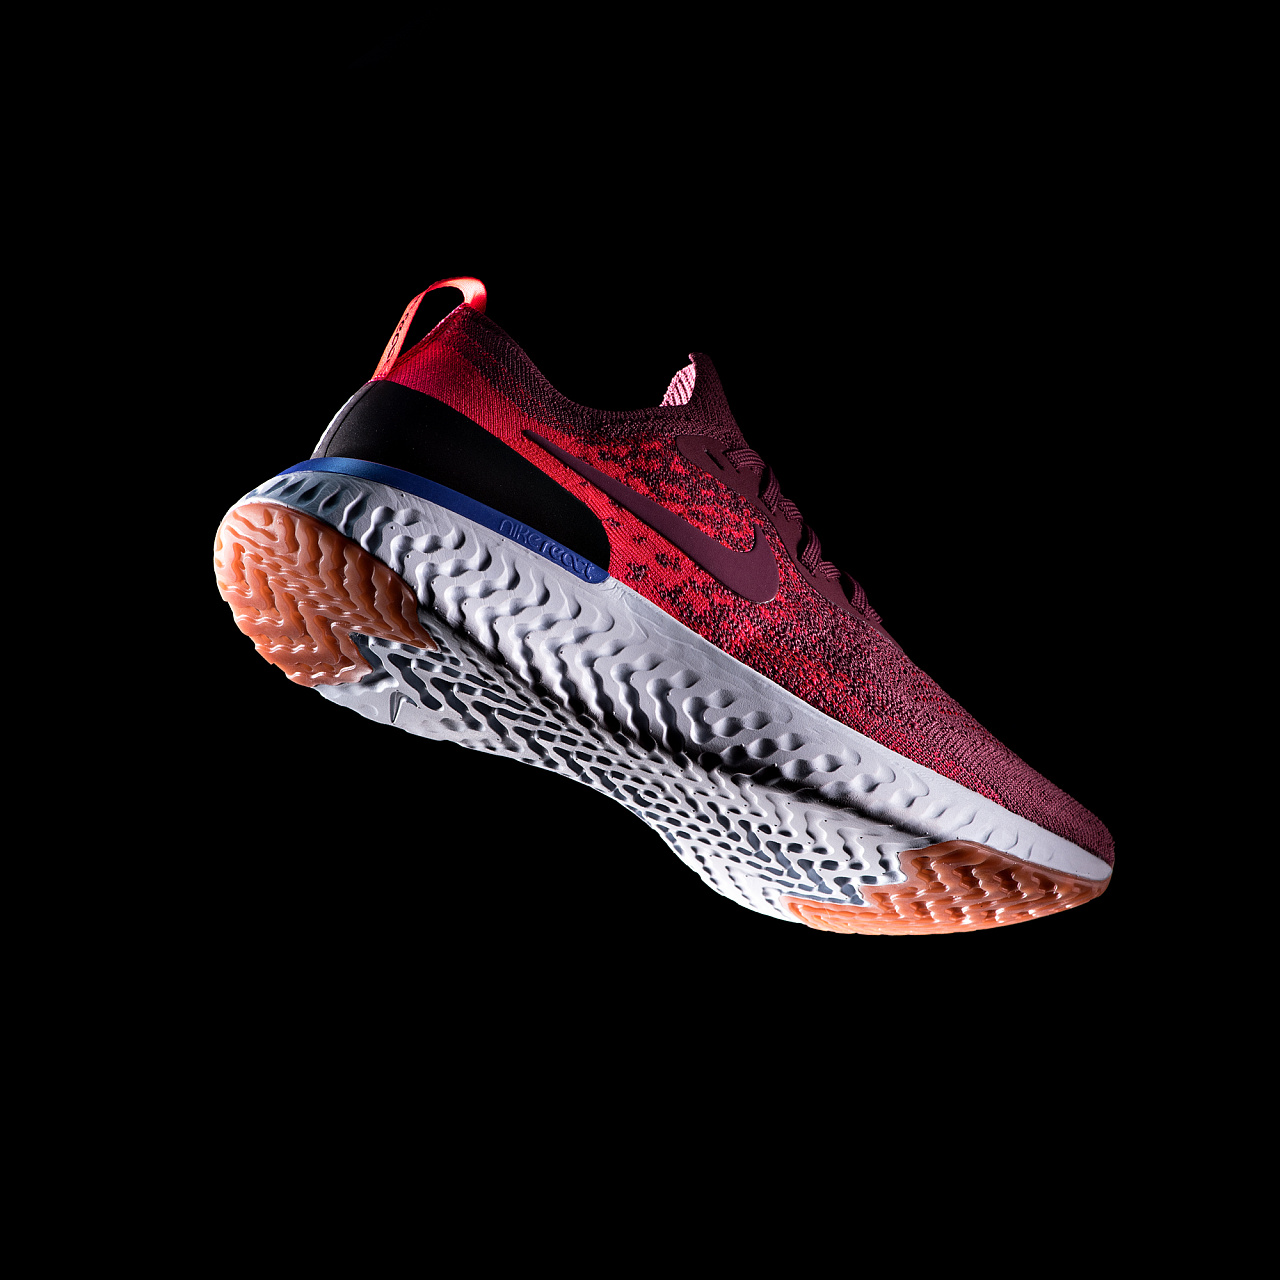 【男款】Nike Flex Contact 运动鞋 红色/黑色 908983-004 - 全民海淘 纵有等待,终究值得